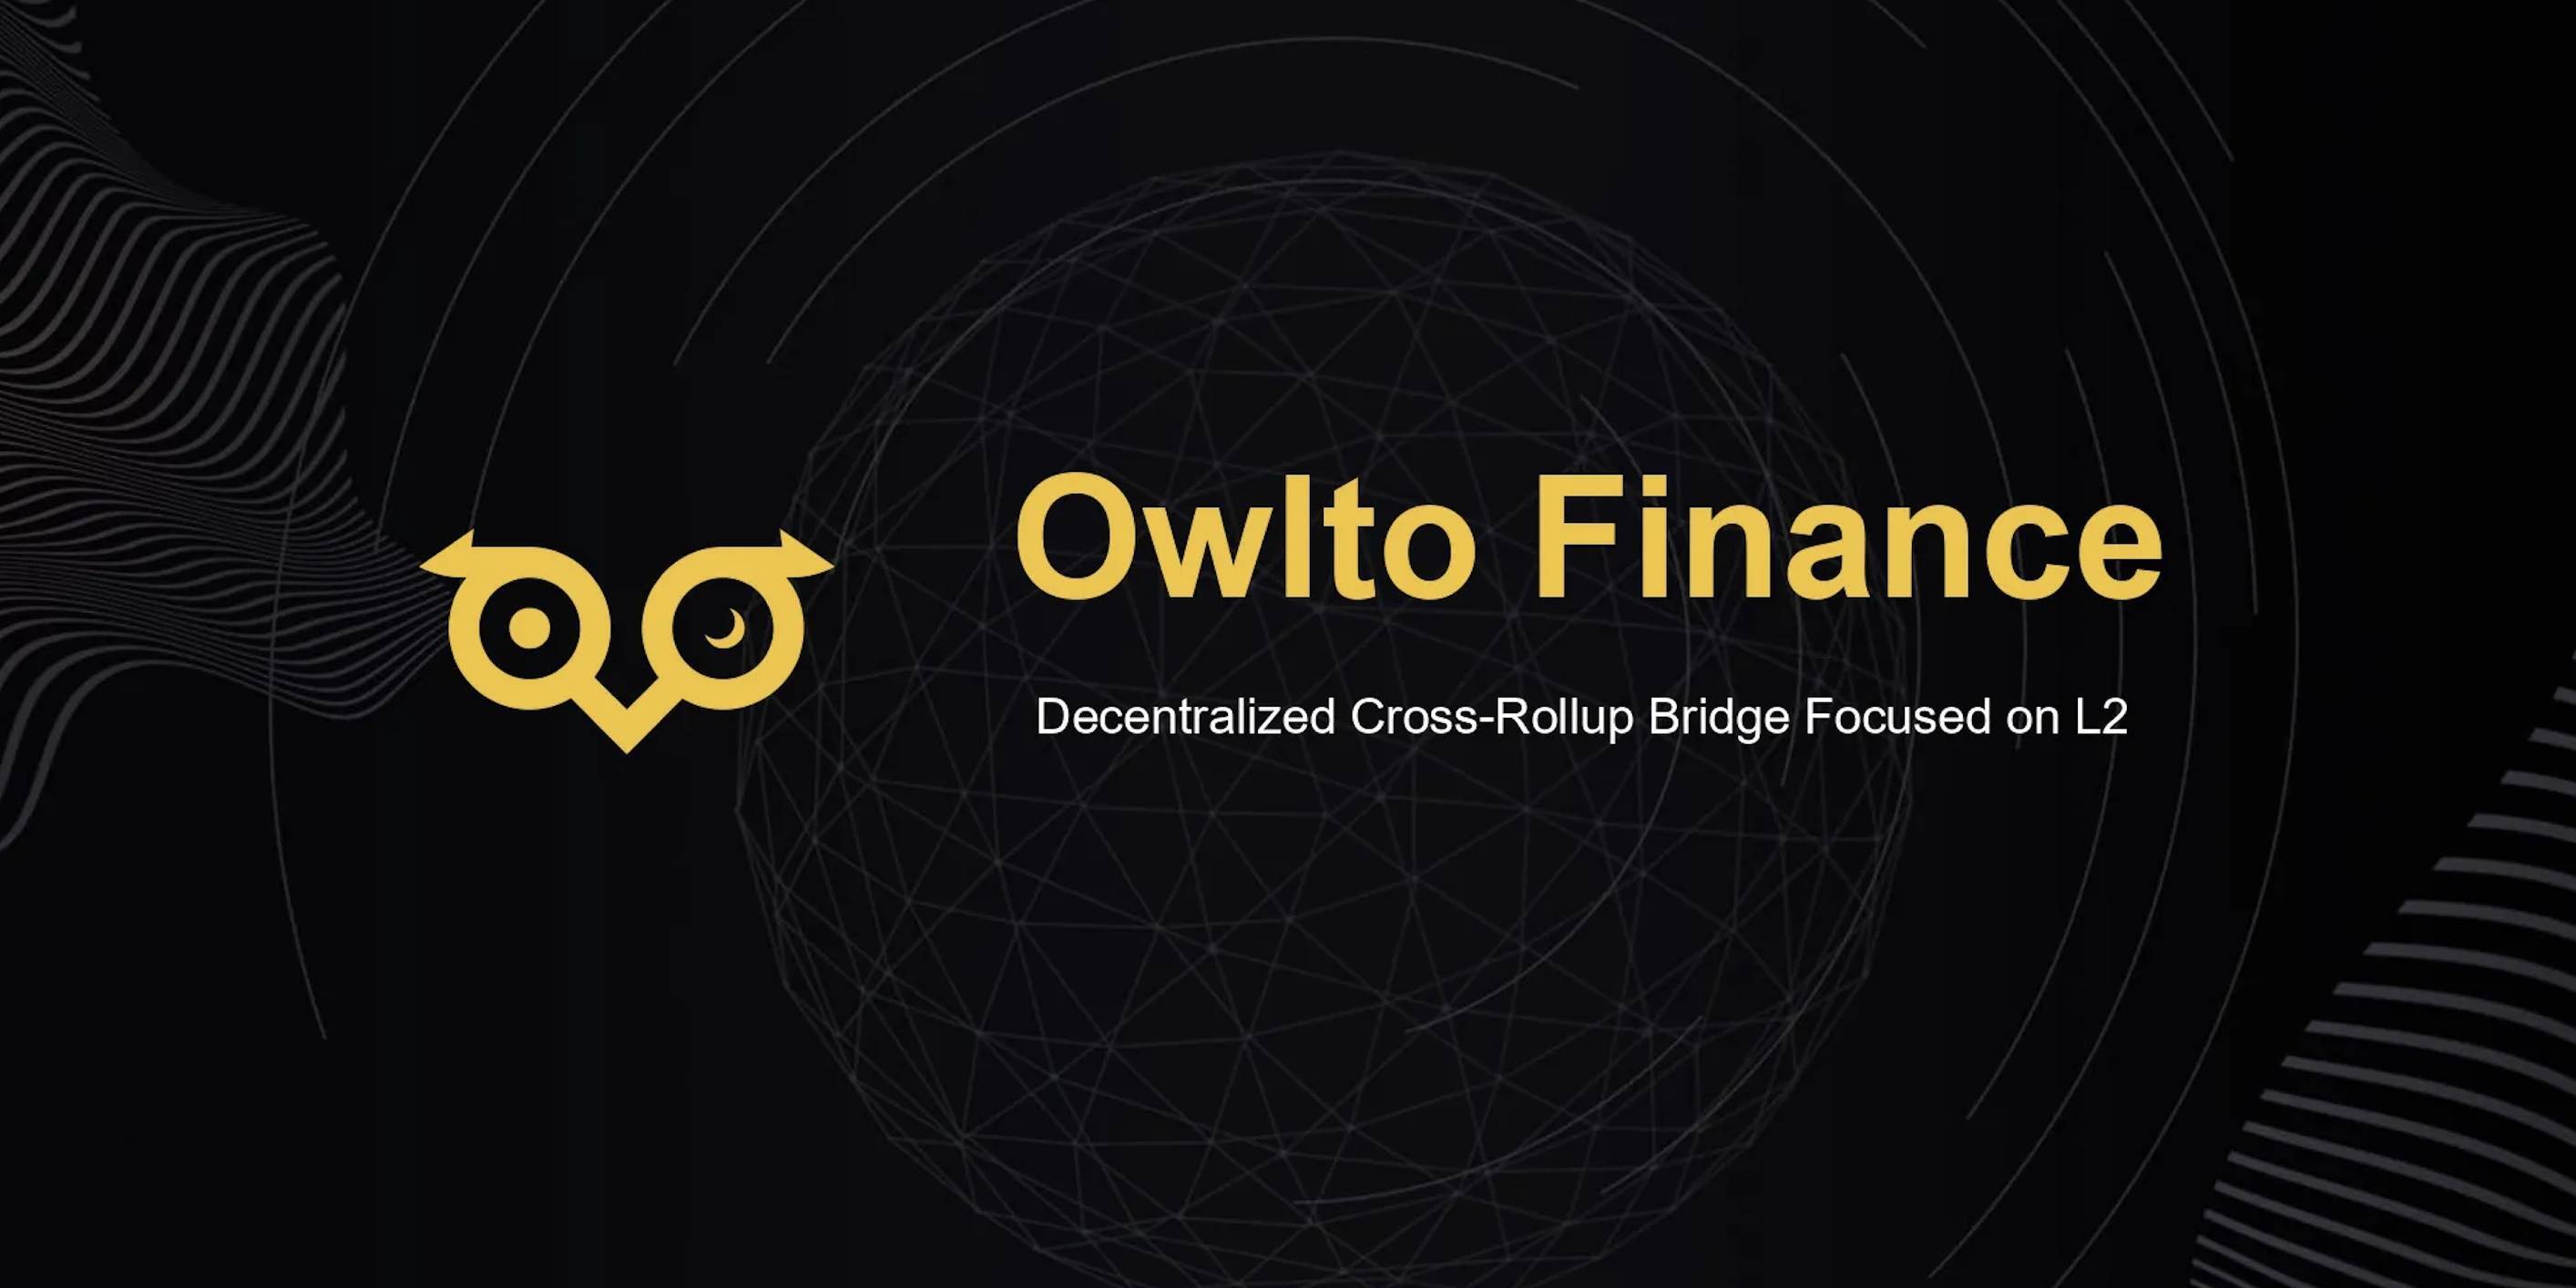 Cầu Nối Owlto Finance Gọi Vốn 8 Triệu Usd